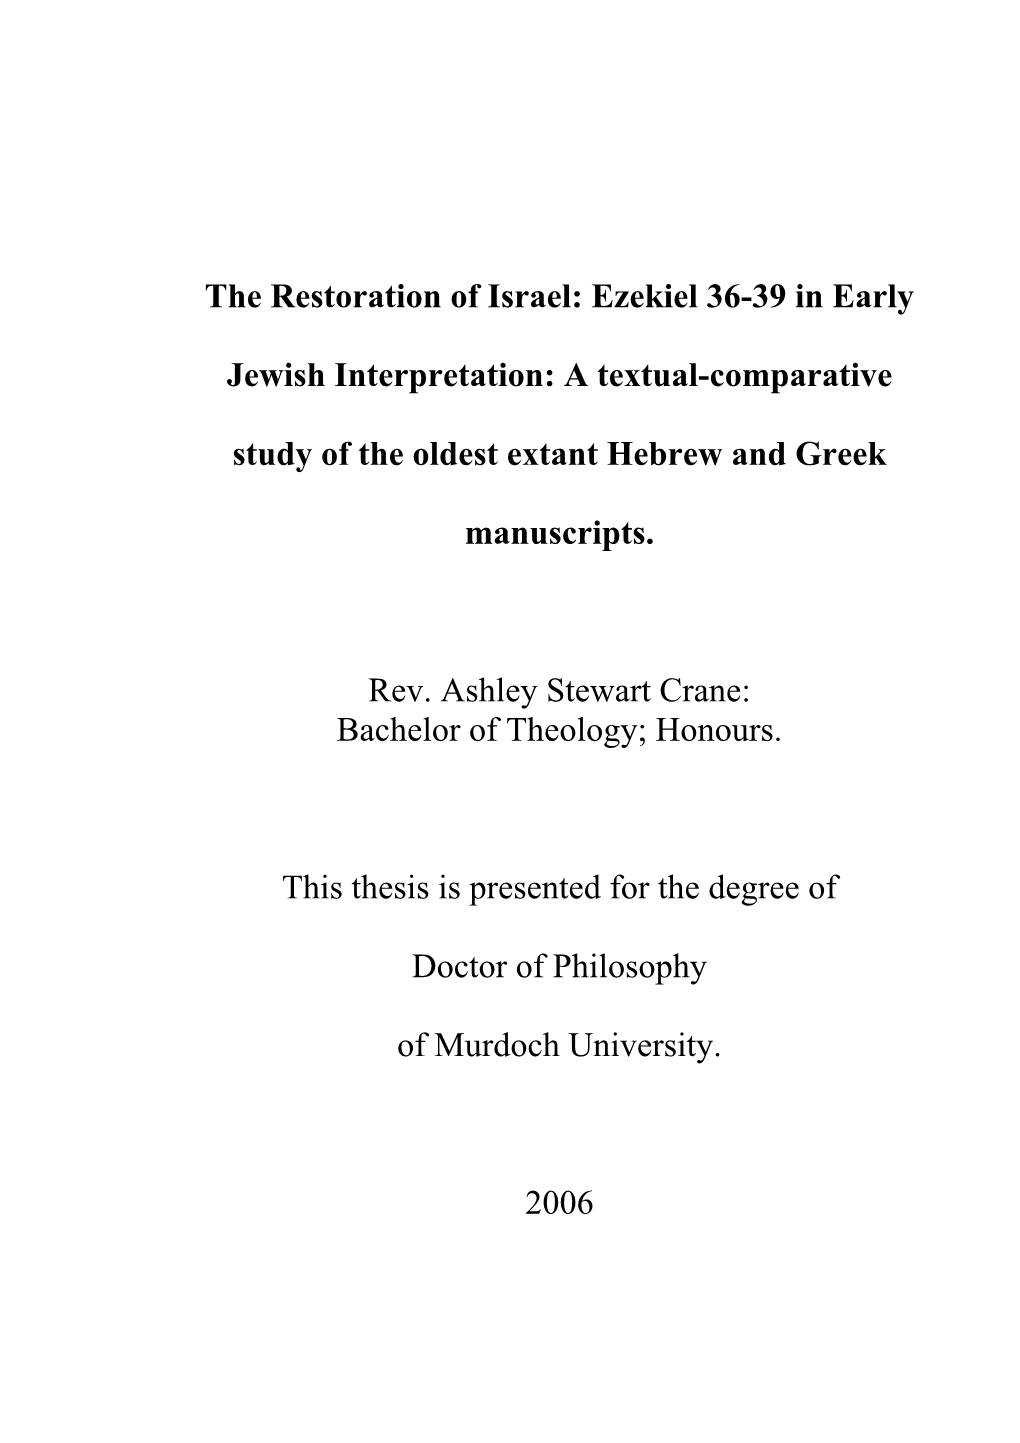 The Restoration of Israel: Ezekiel 36-39 in Early